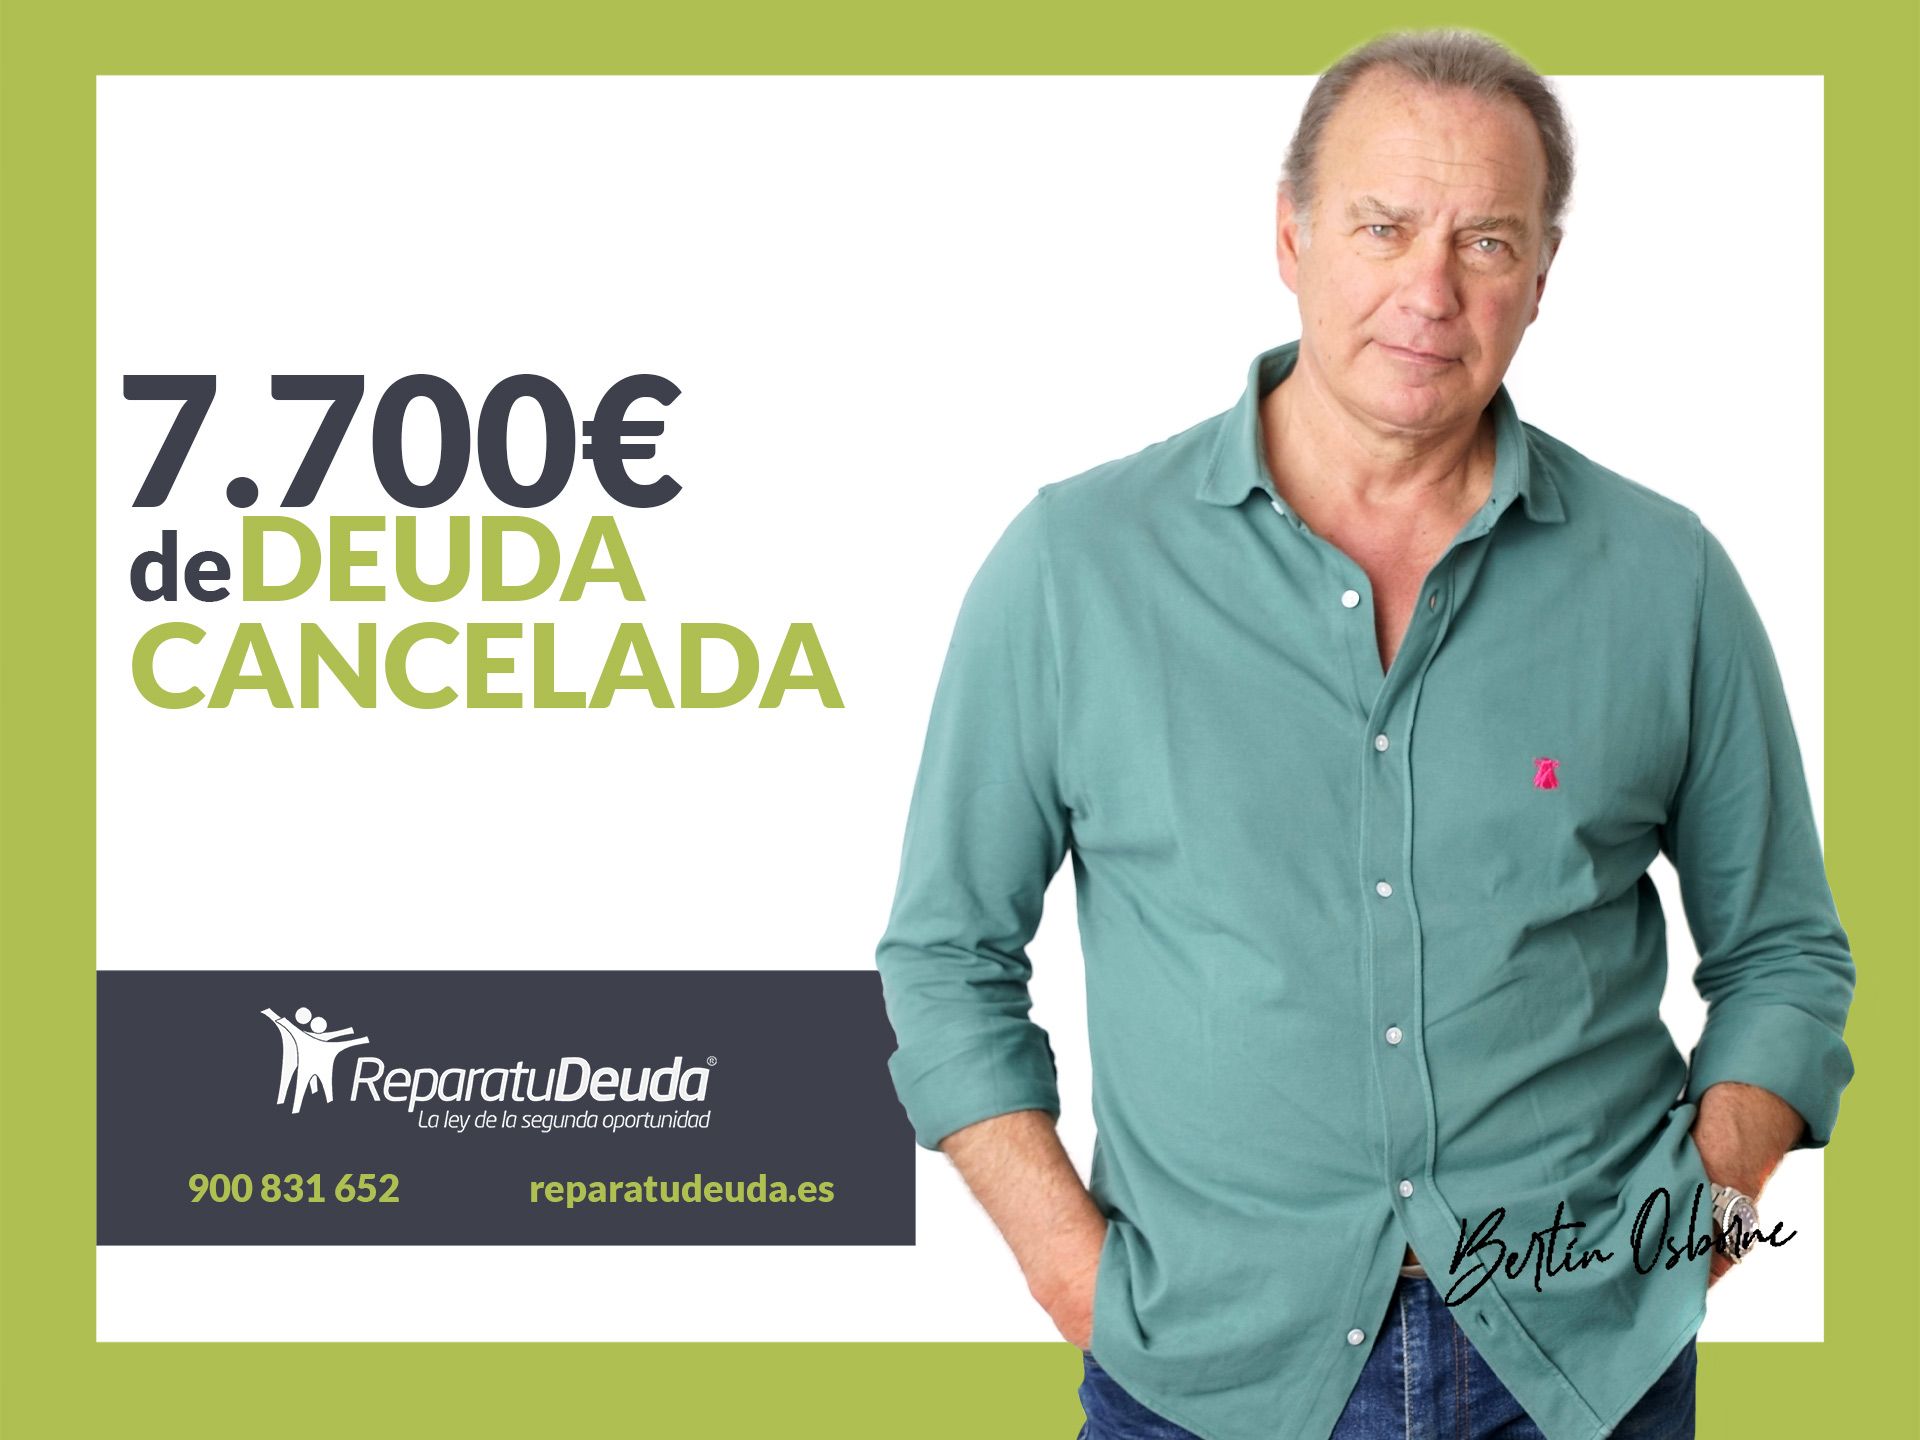 Repara tu Deuda Abogados cancela 7.700? en Oviedo (Asturias) gracias a la Ley de Segunda Oportunidad